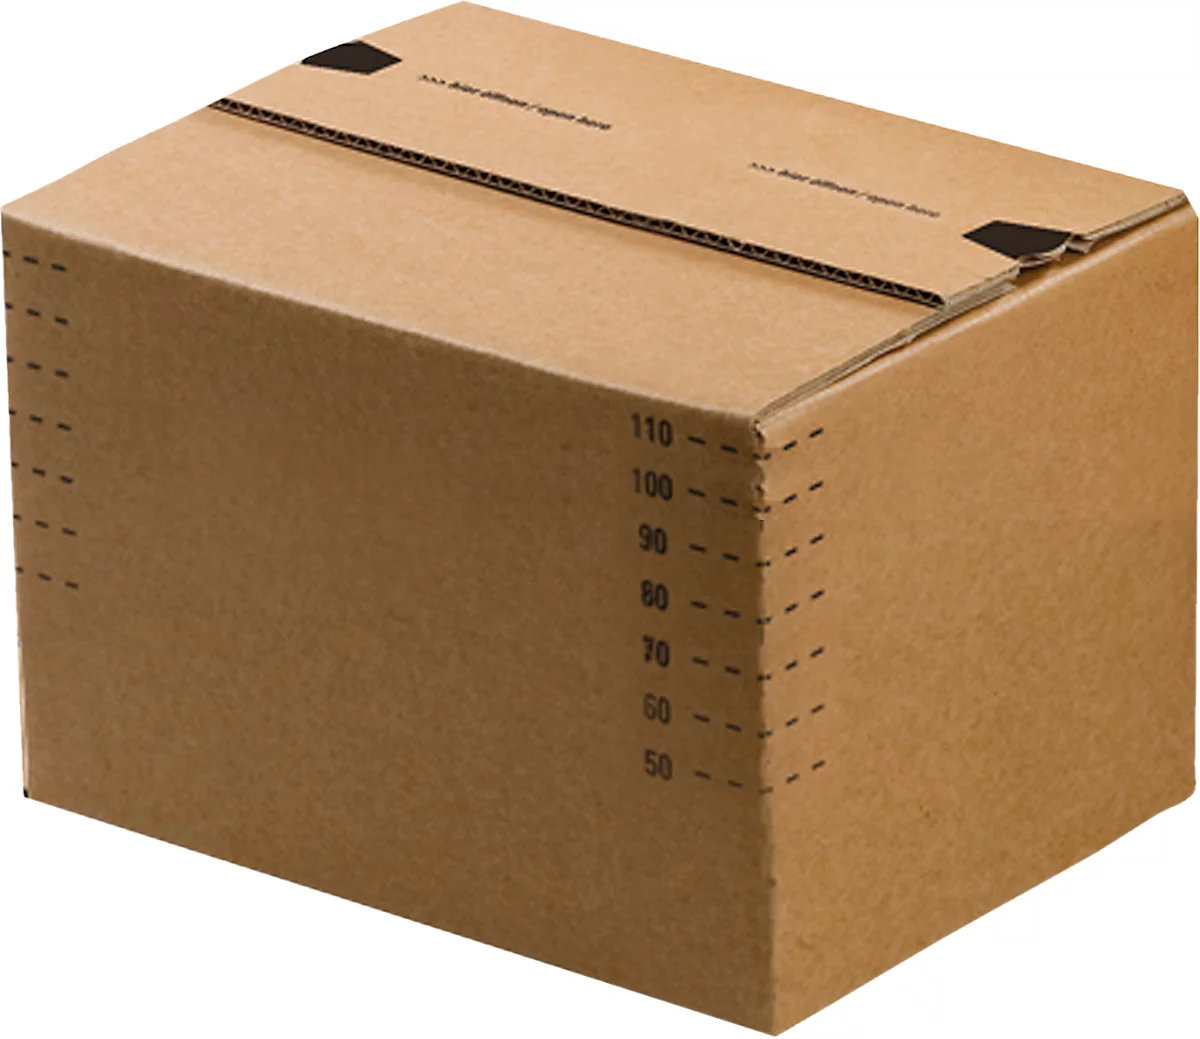 Cajas de cartón para envíos, fondo automático y tapa con solapa recerrable, hasta 20 kg, dimensiones interiores L 175 x W 105 x H 75 mm, cartón corrugado, marrón, 50 piezas